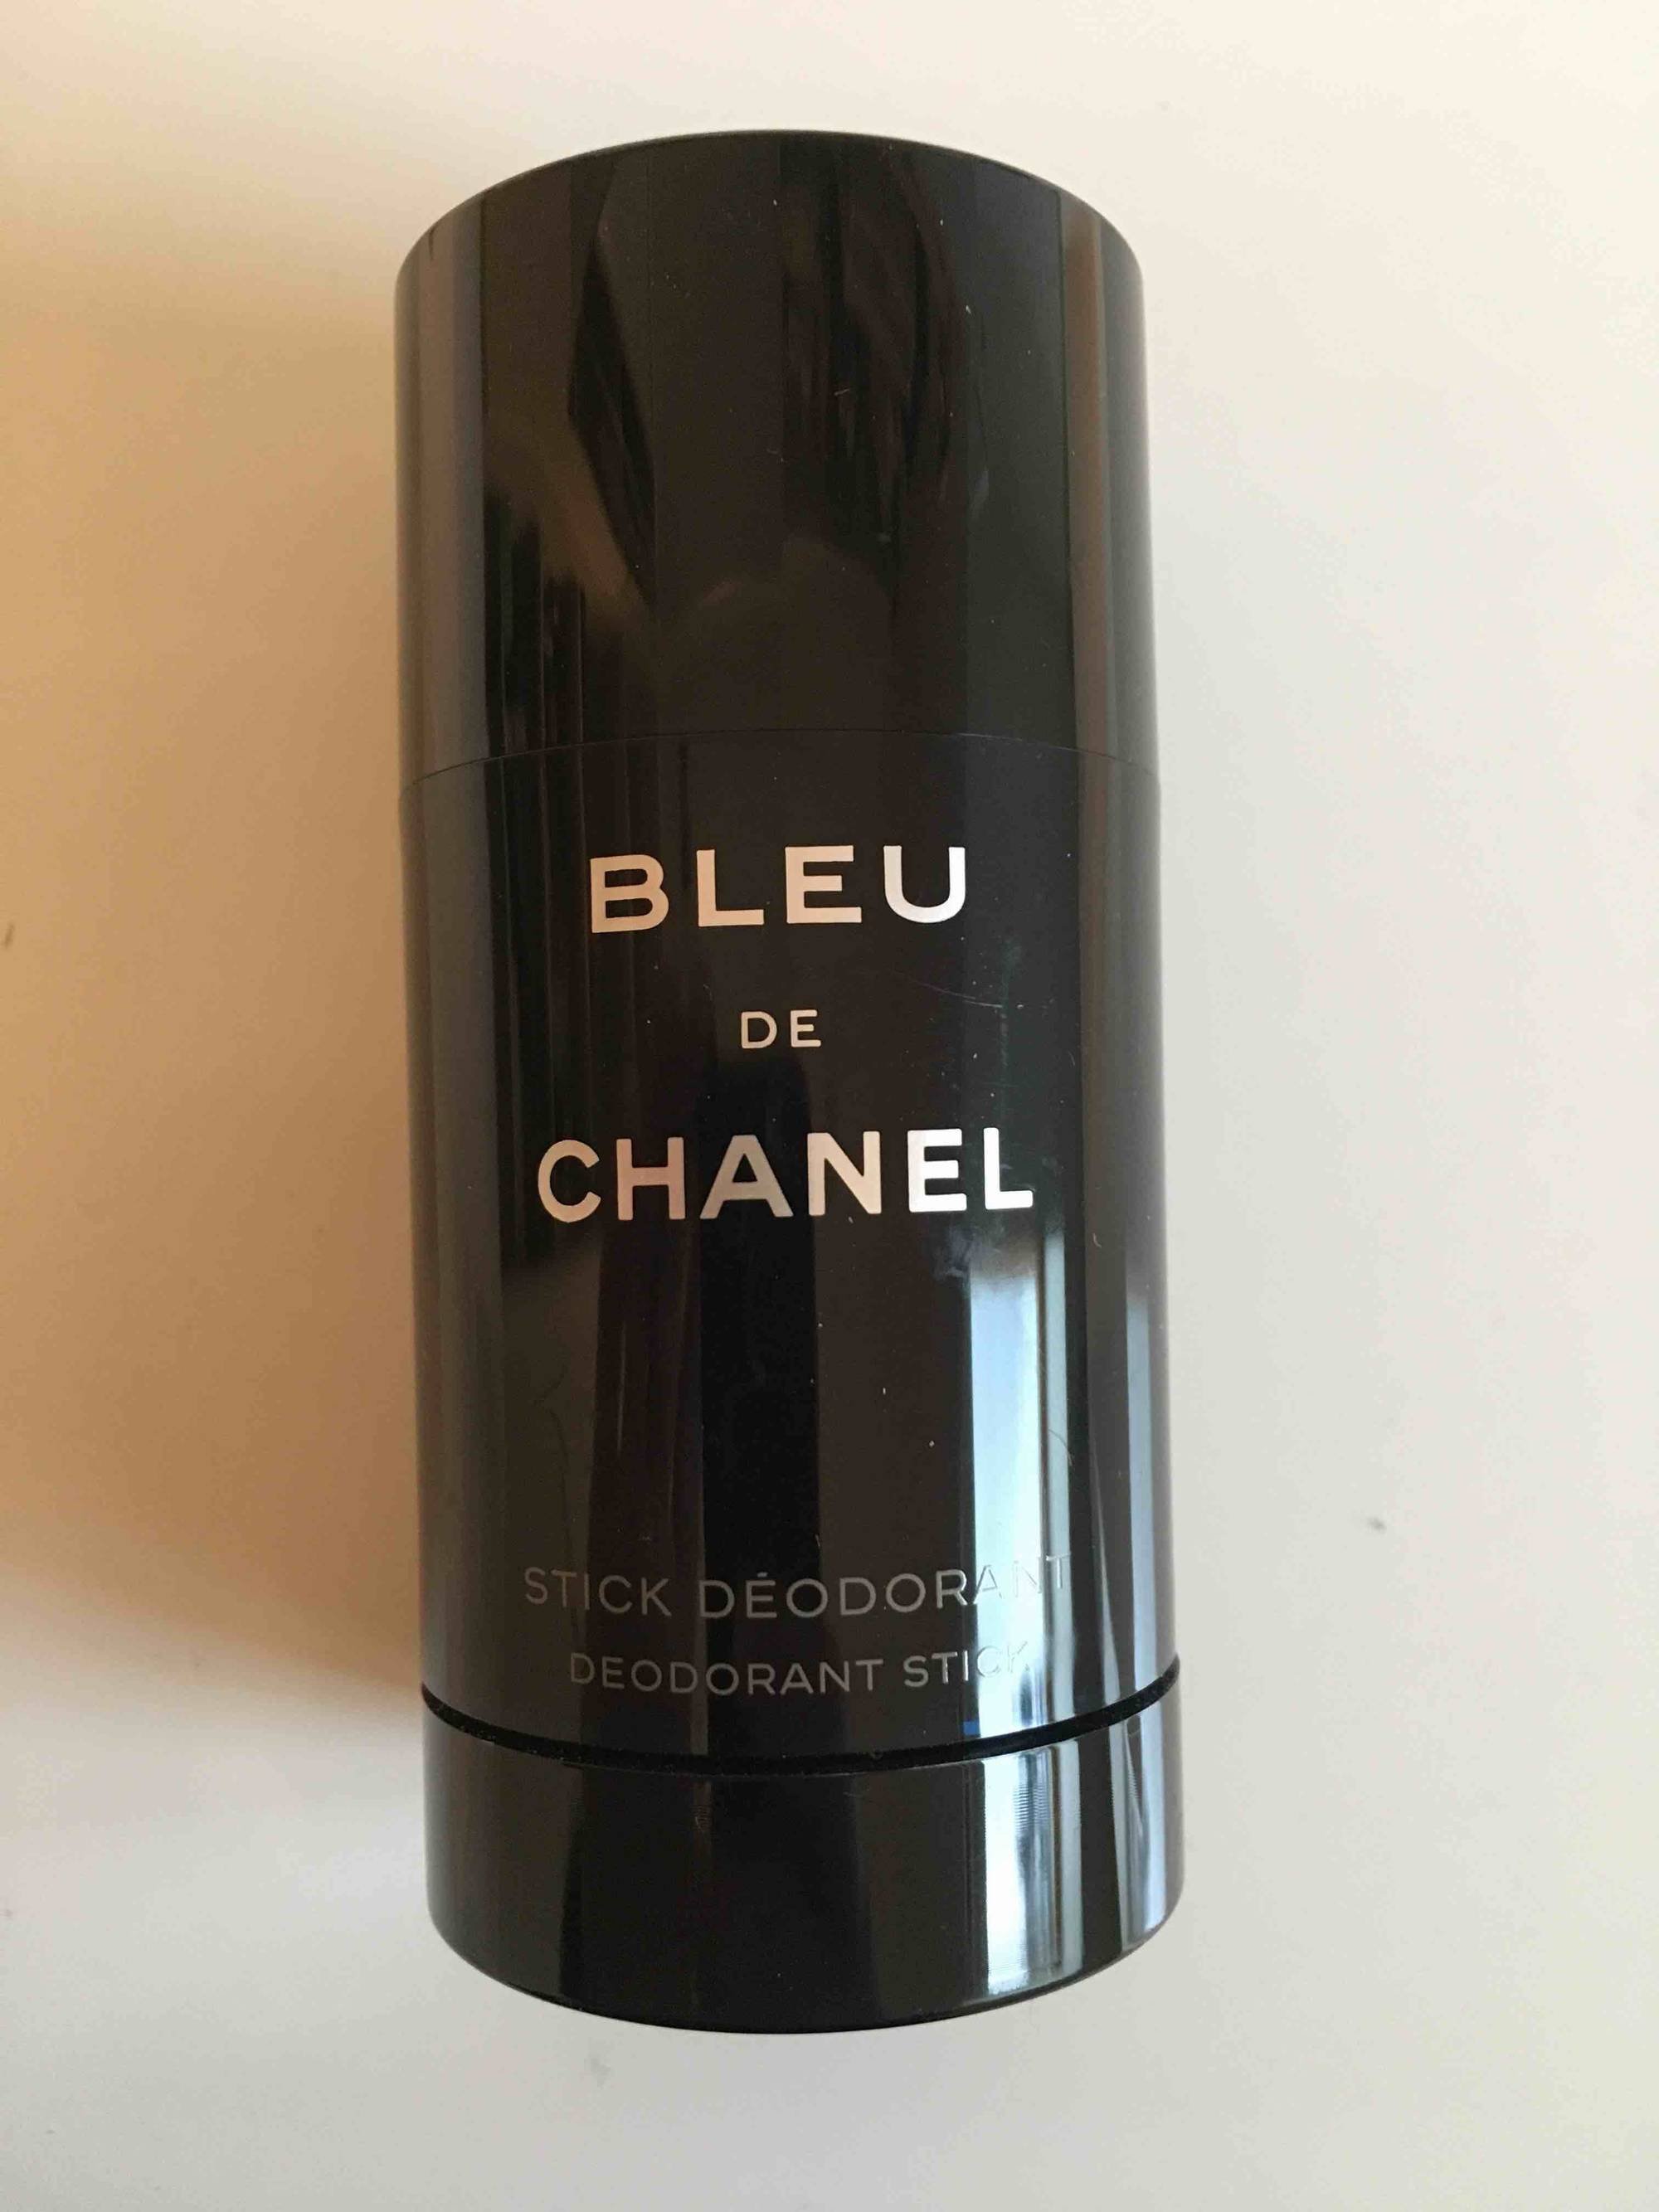 Composition CHANEL Bleu de Chanel - Déodorant stick - UFC-Que Choisir